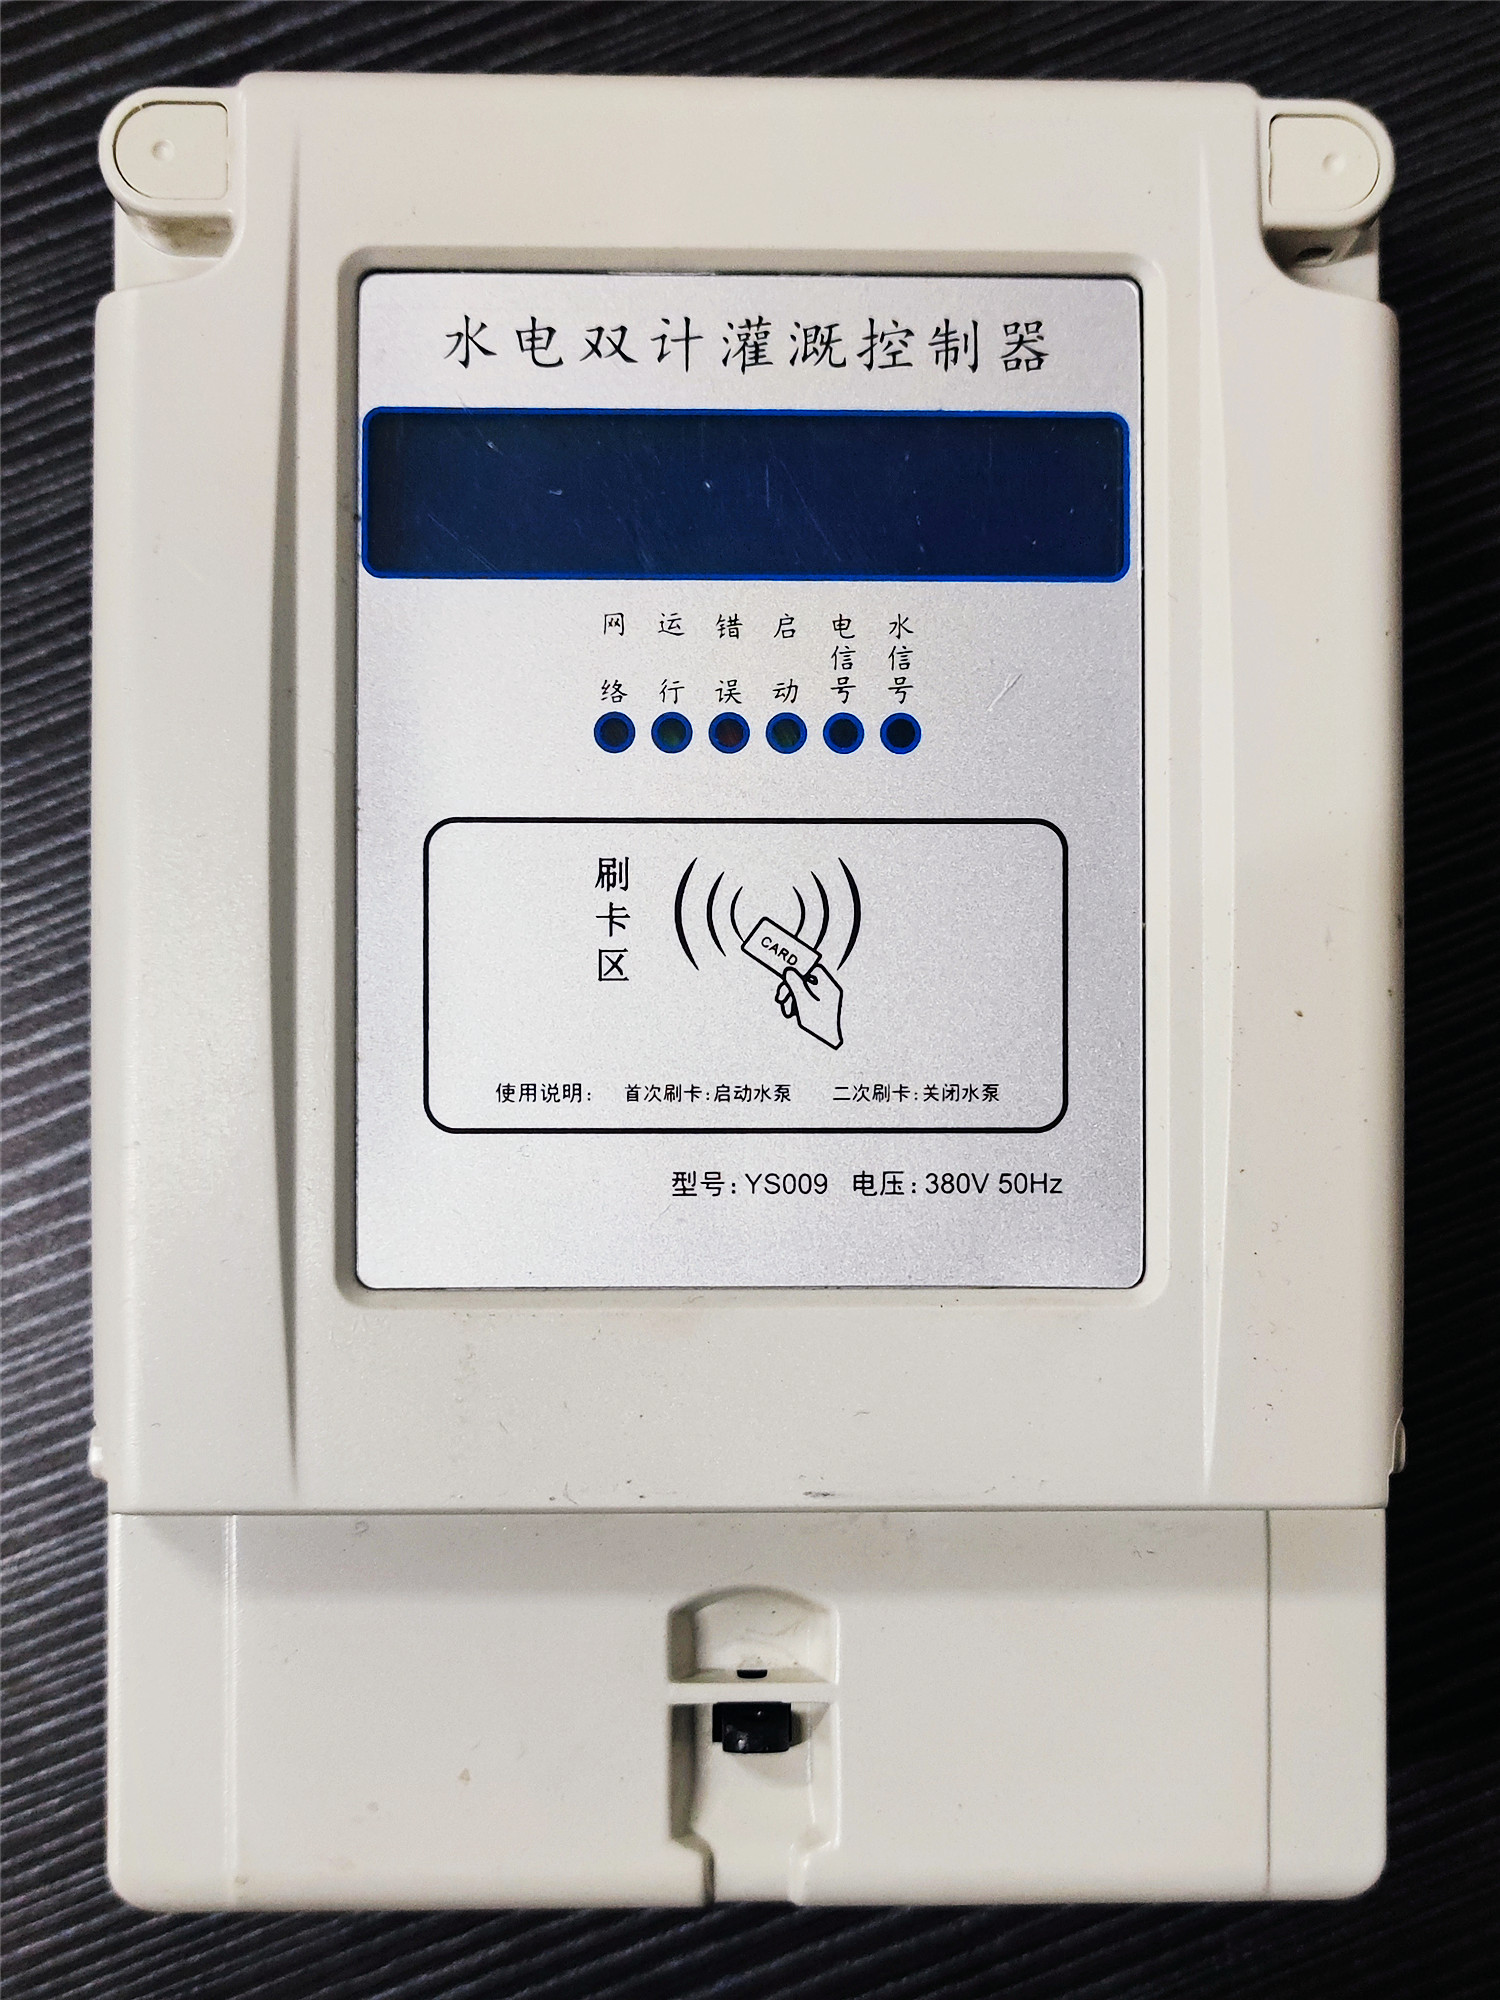 北京射频卡灌溉控制器出售_射频卡灌溉控制器多少钱_射频卡灌溉控制器供应商图片